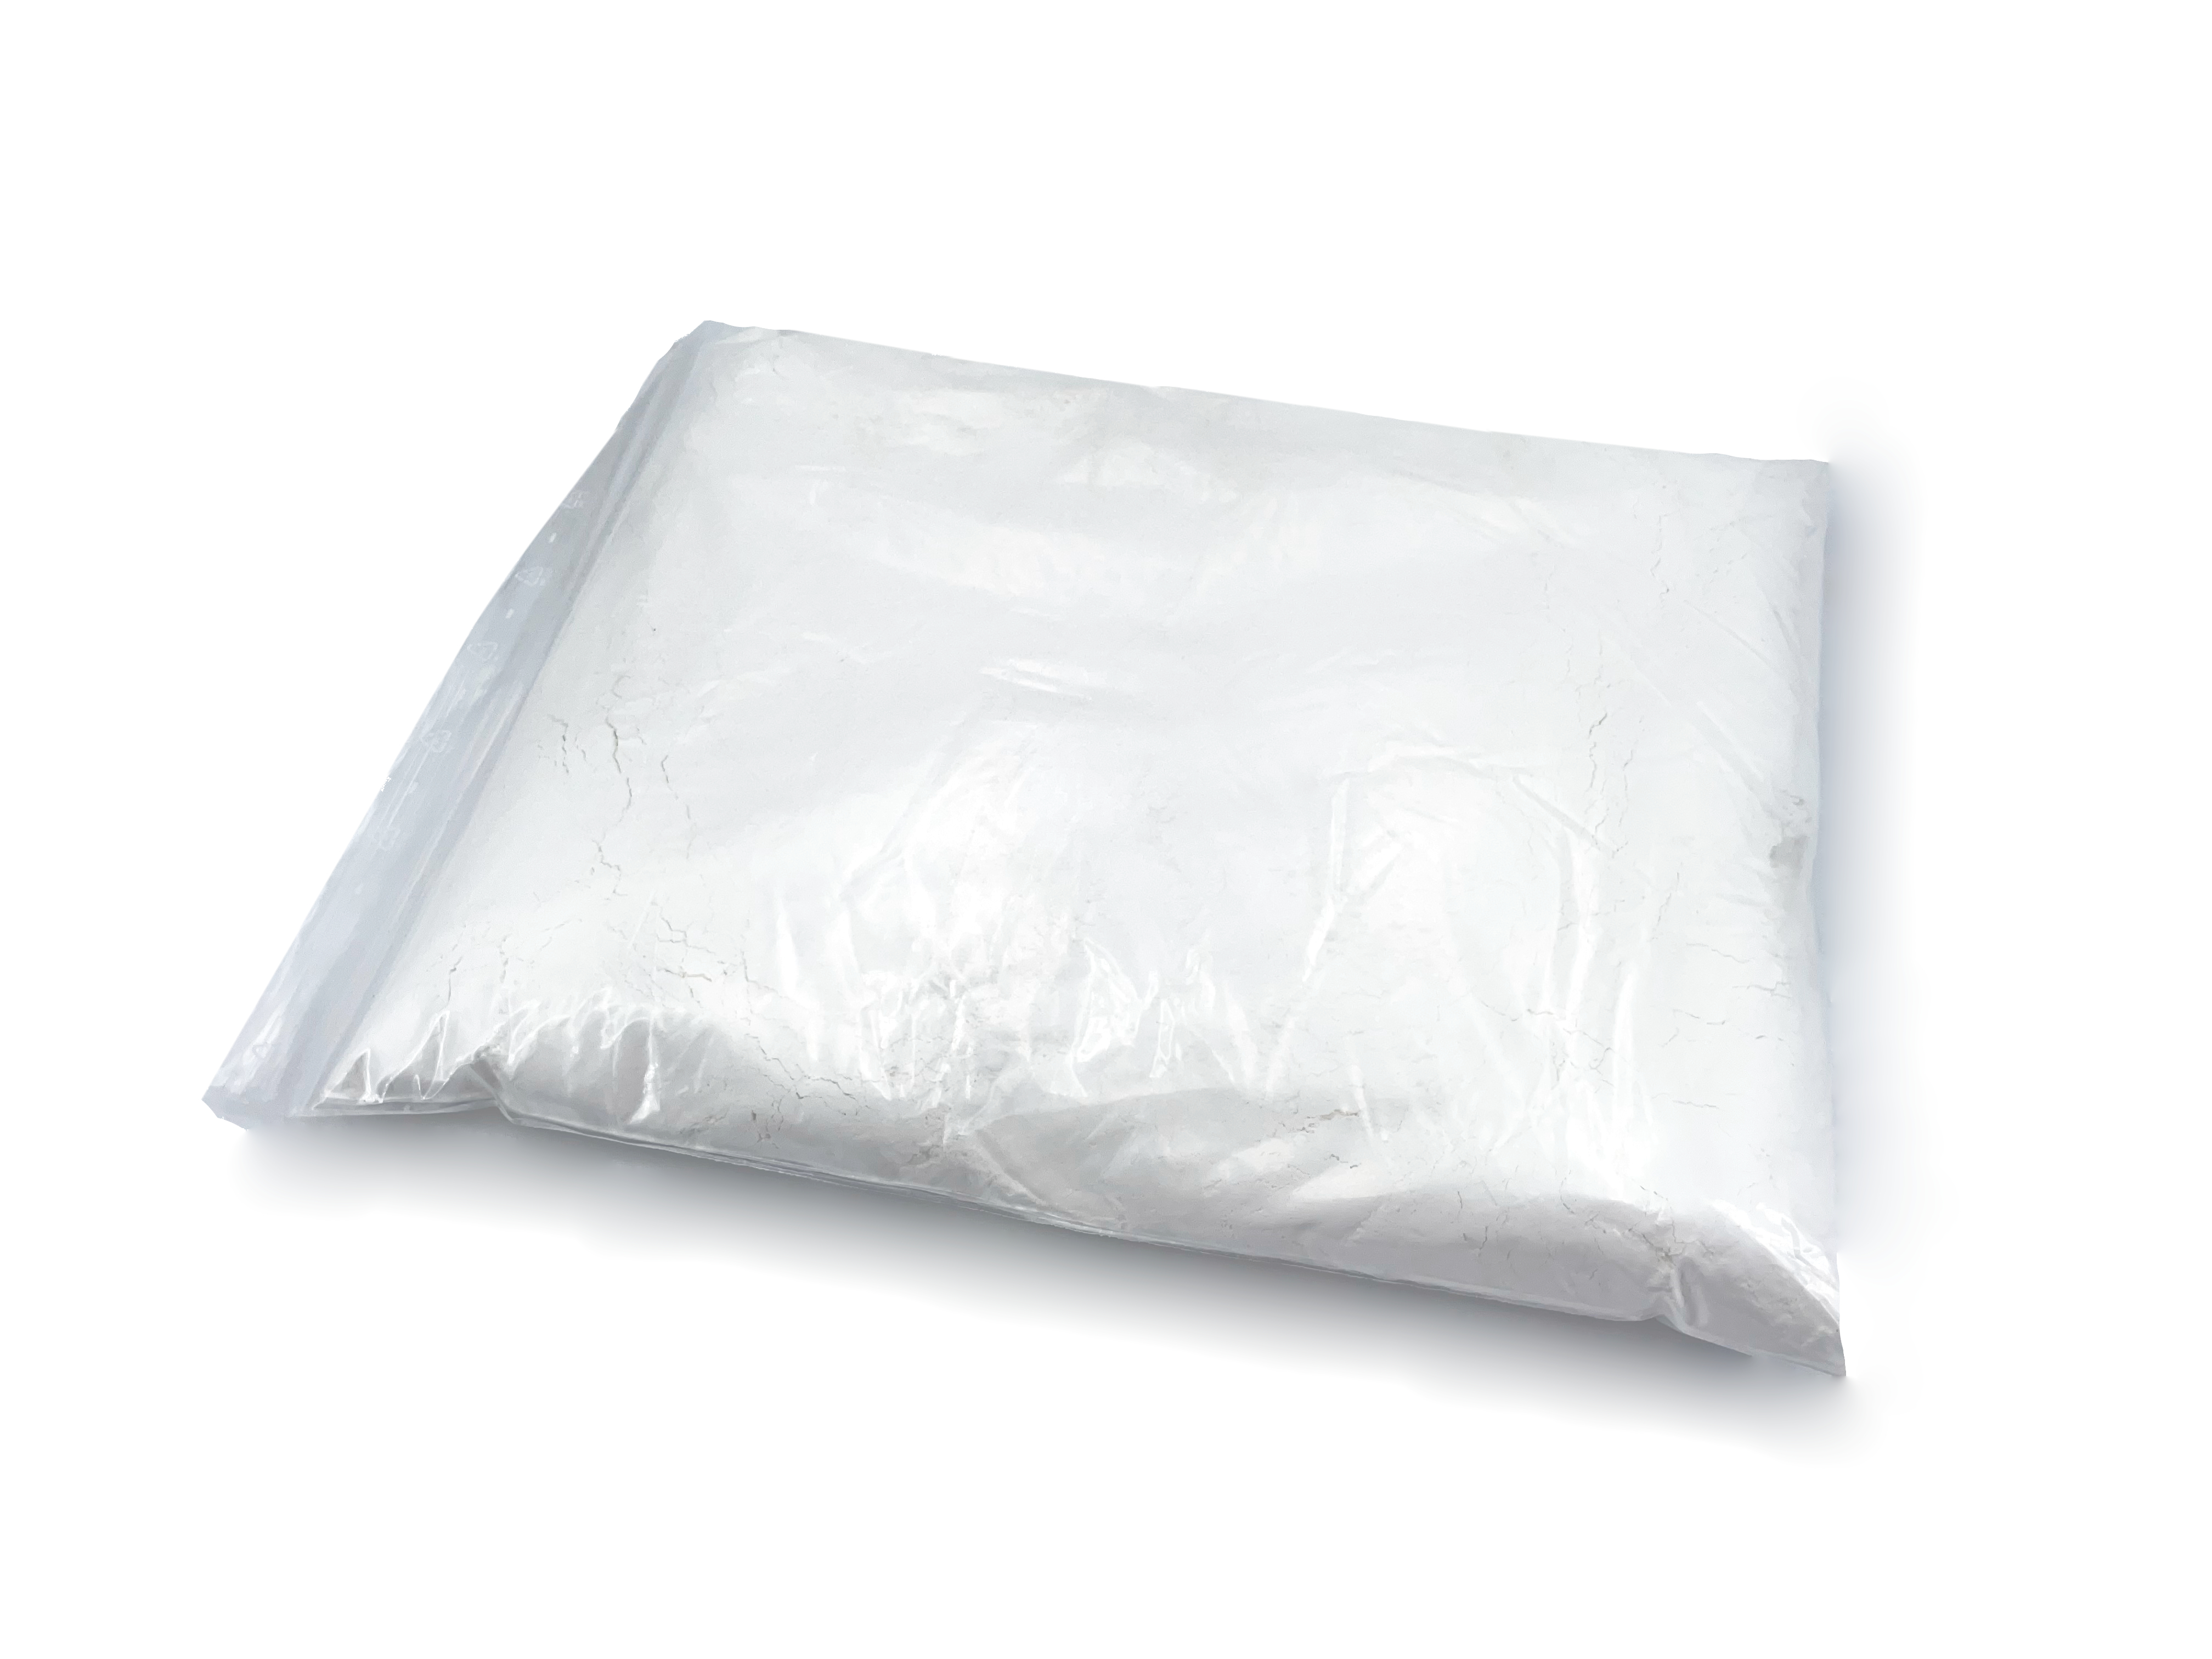 Schleifpulver, Poliermittel - Aluminiumoxid - 1 kg (Polierpulver fein)